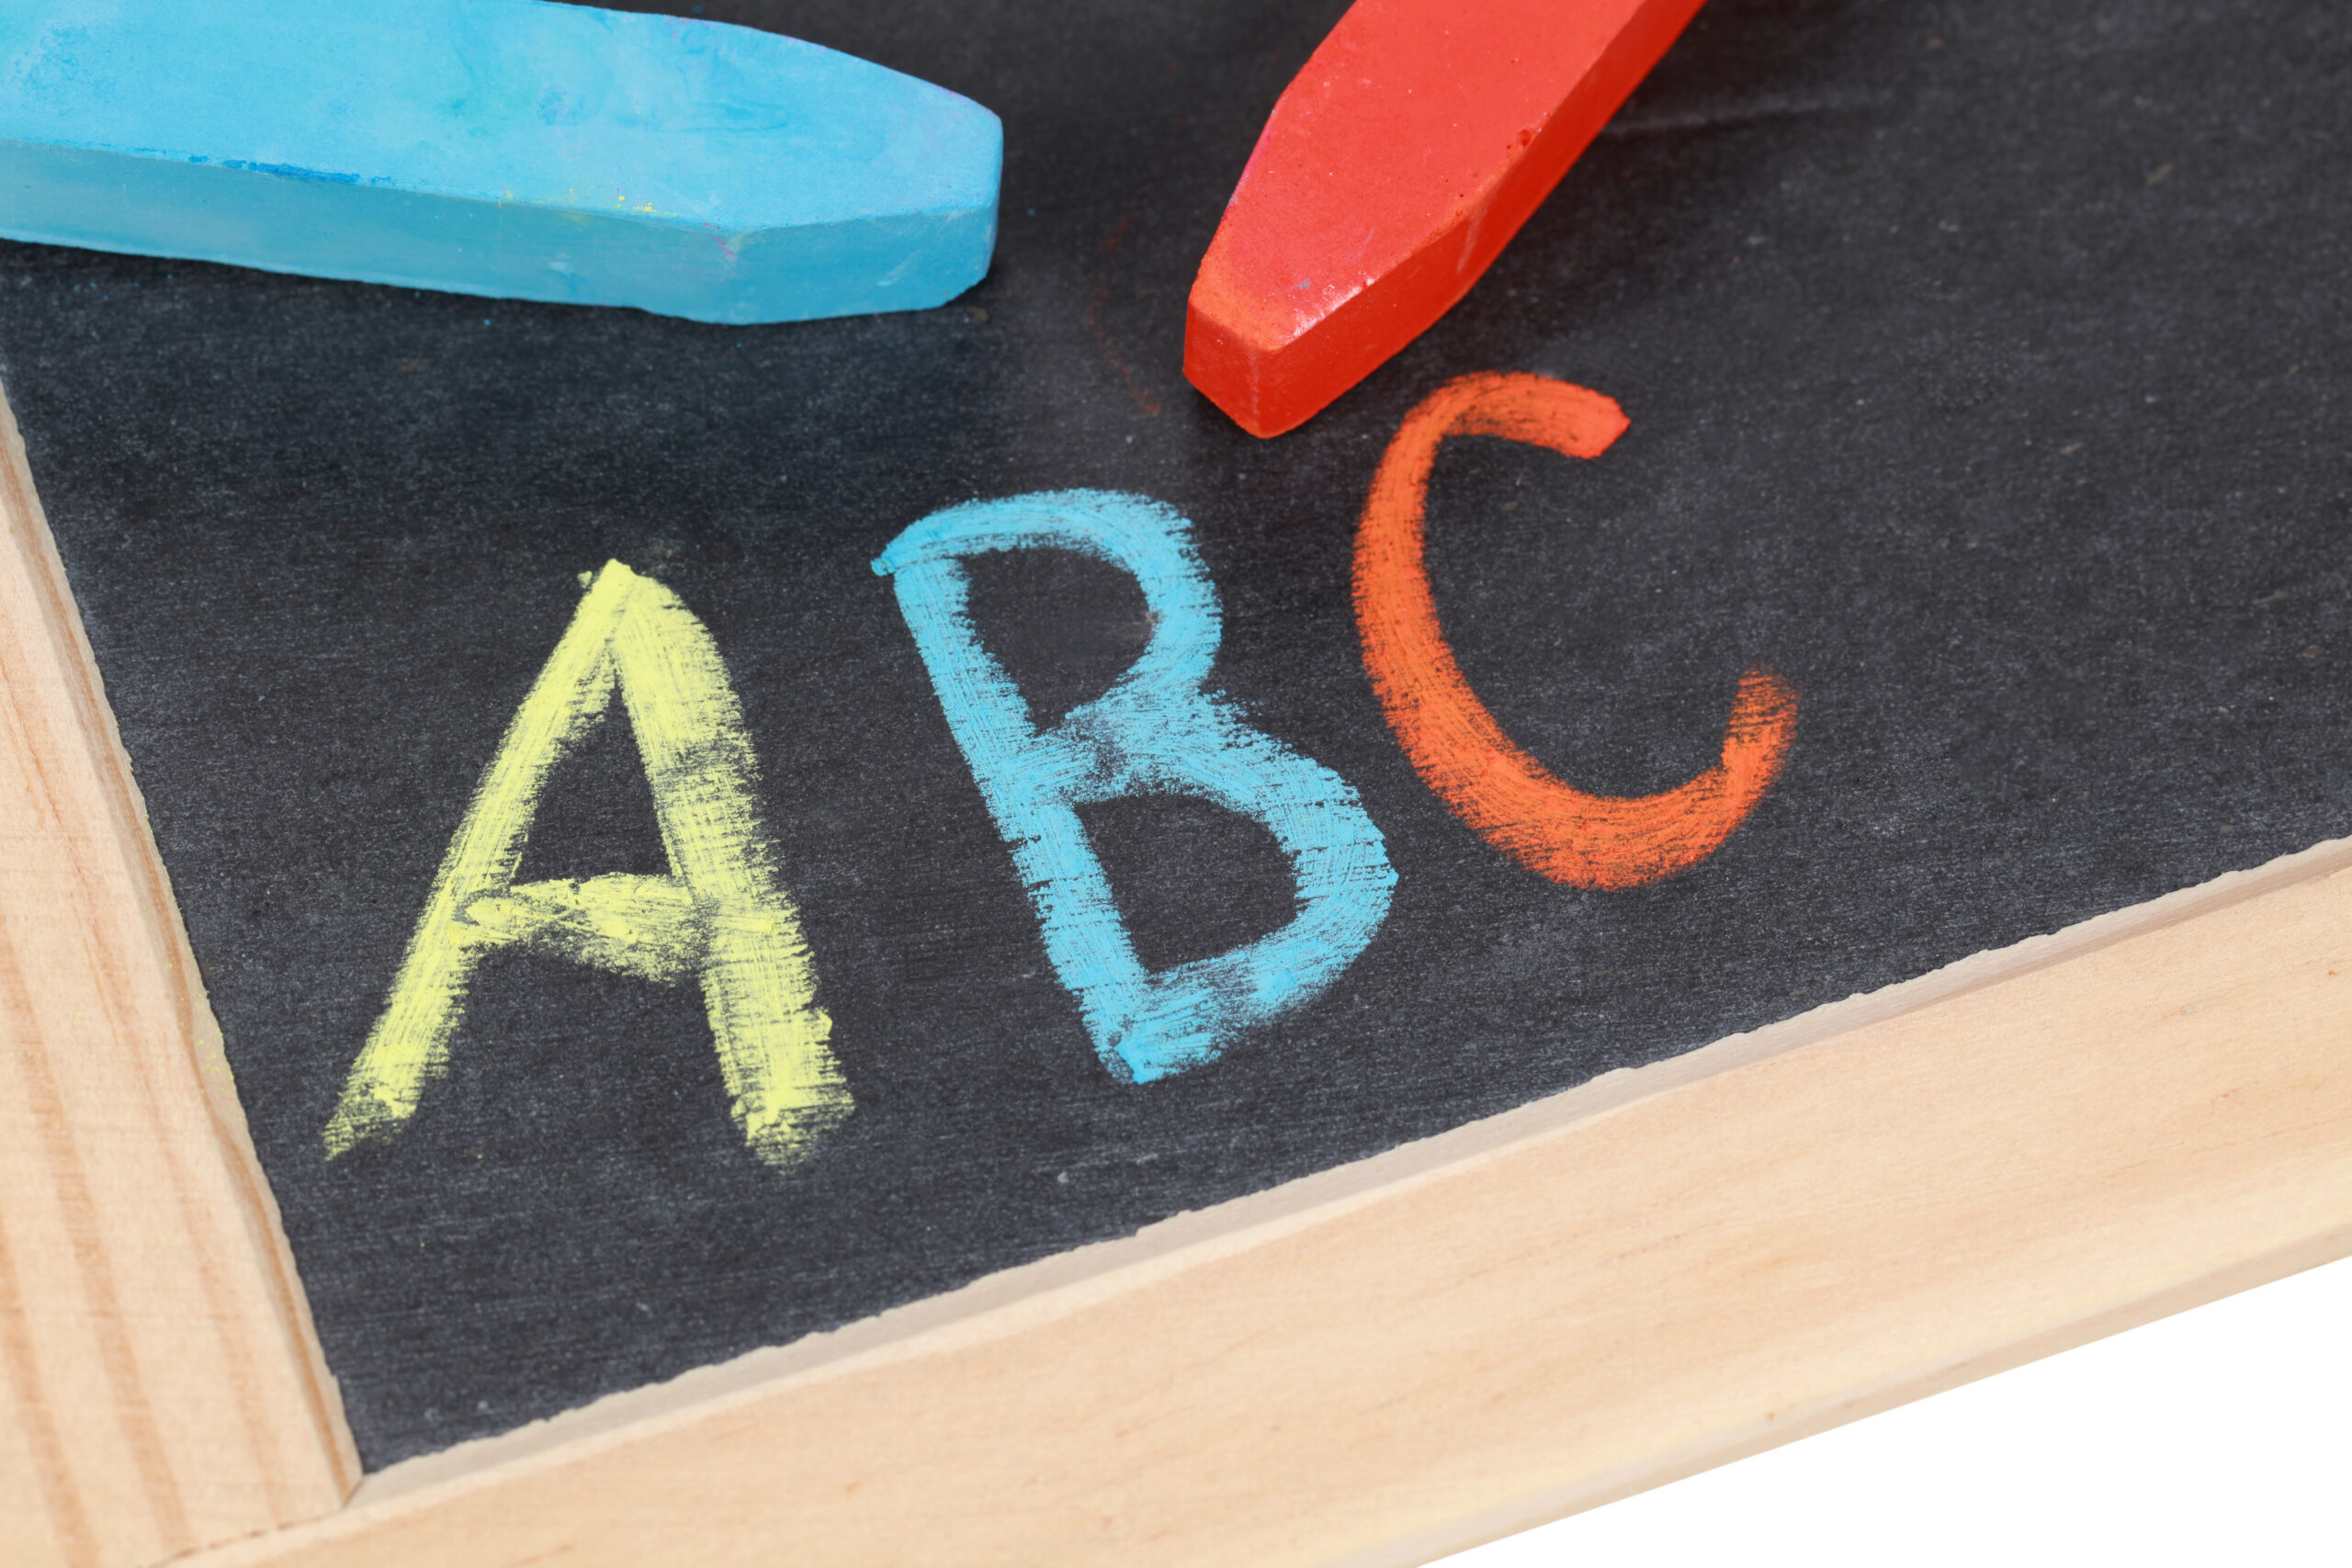 Dyslexique or not dyslexique, est-ce vraiment la question ? - ABC